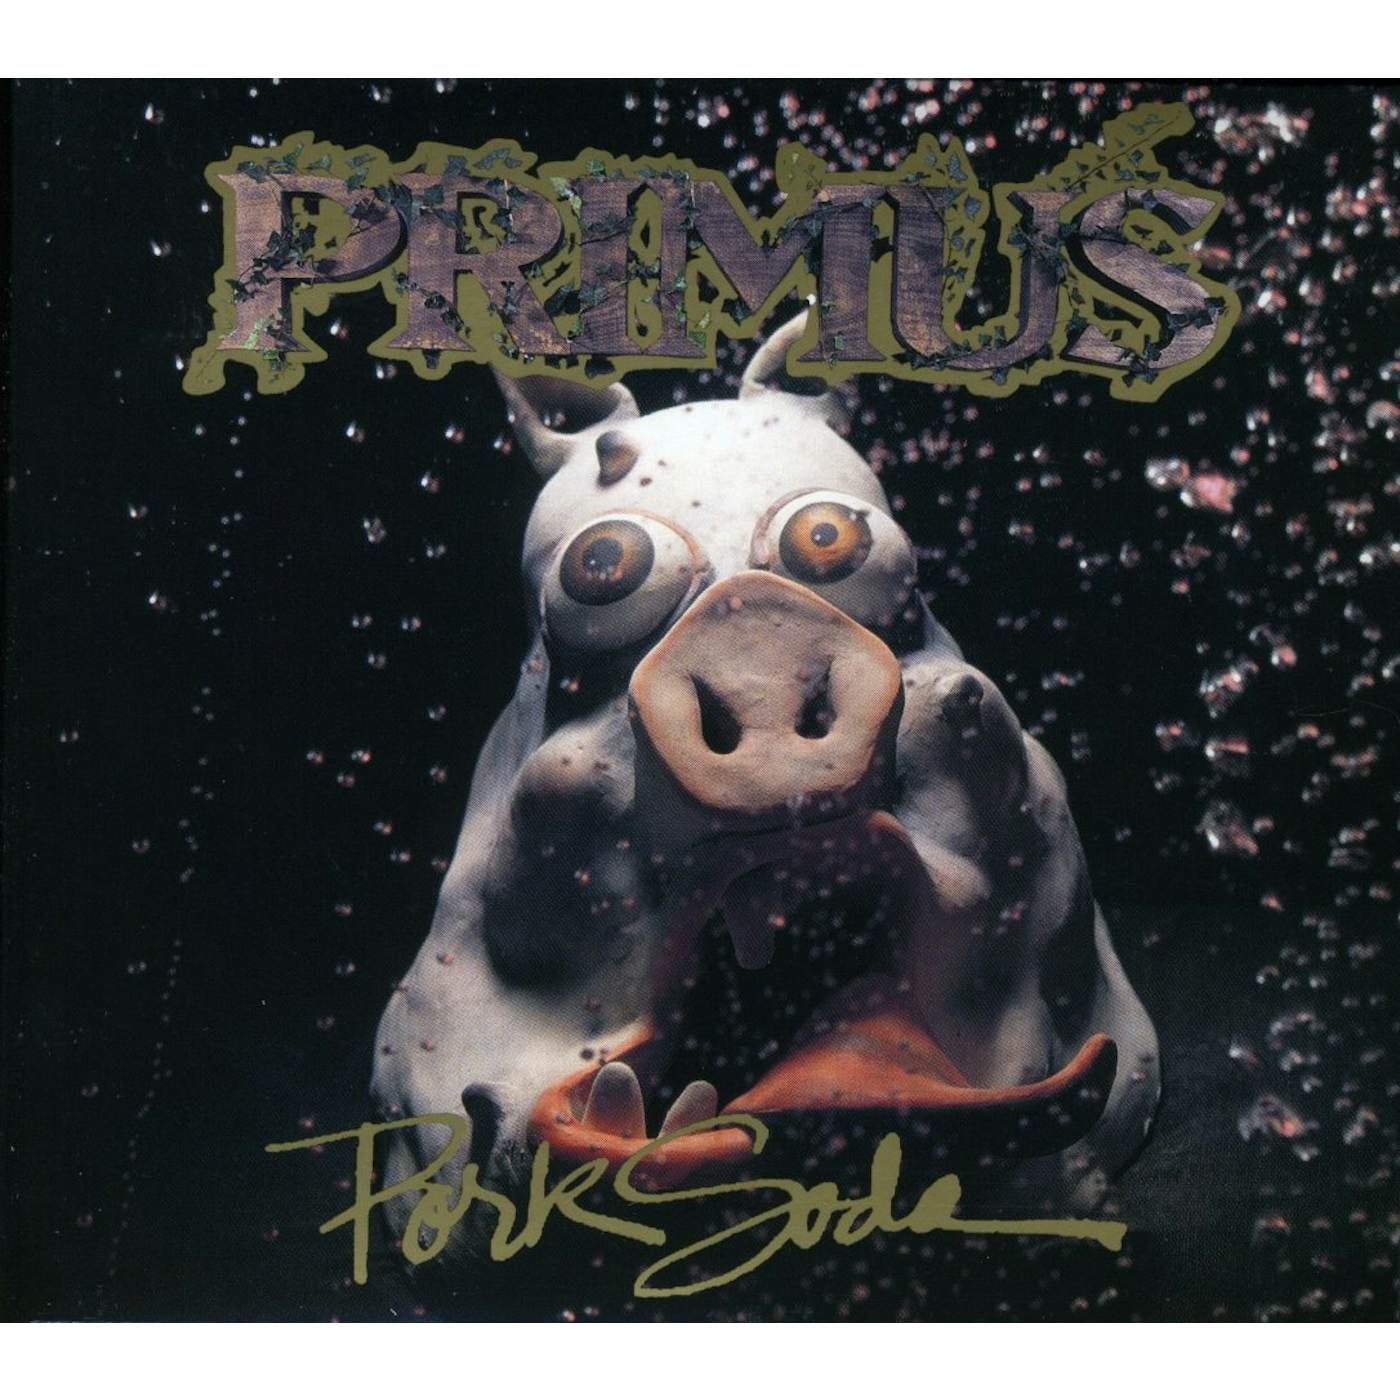 Primus PORK SODA CD